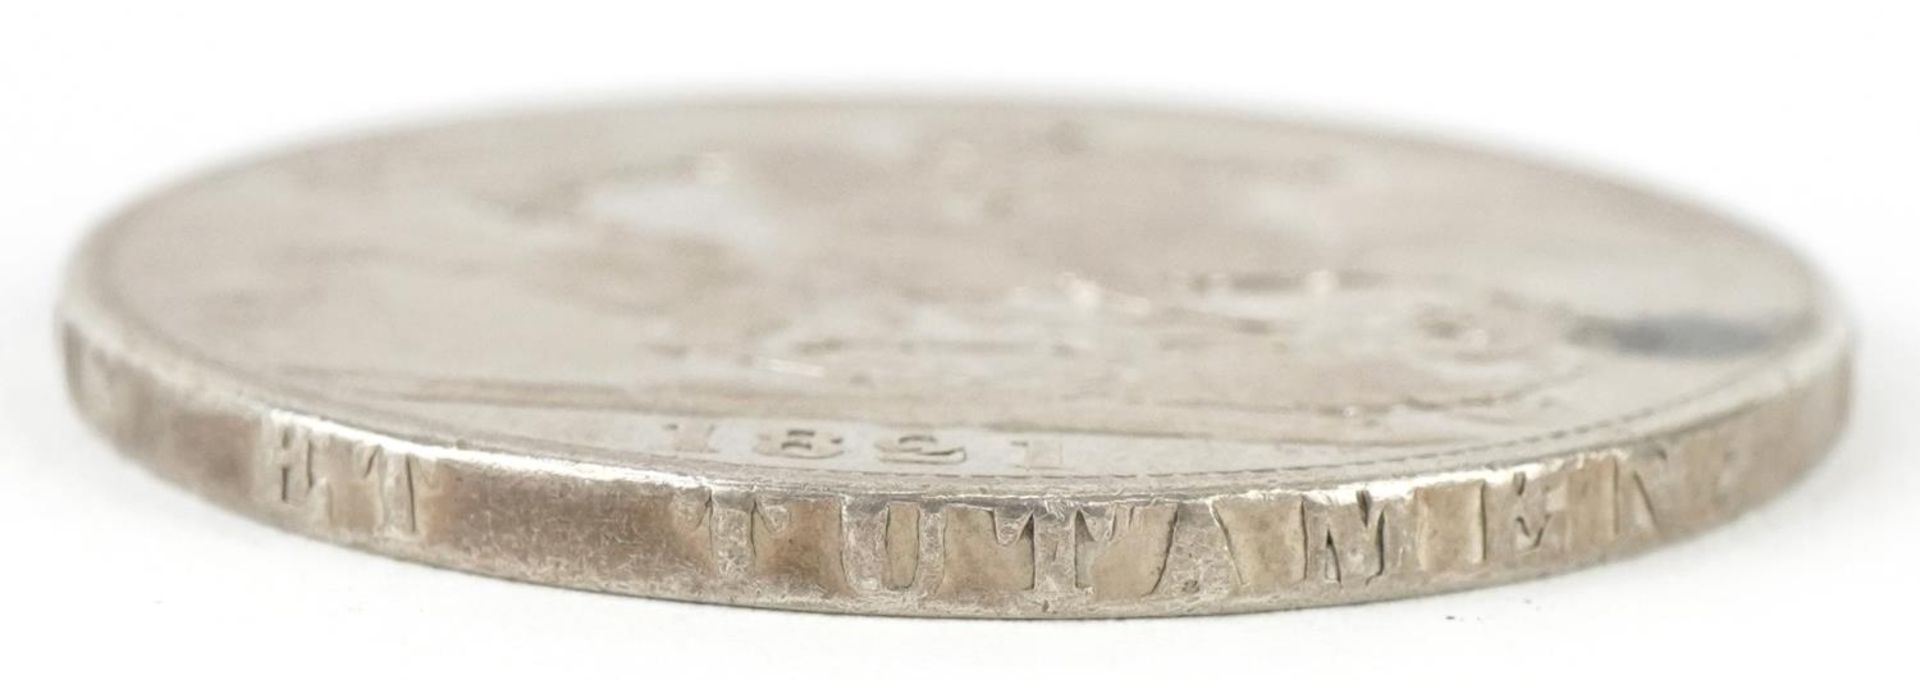 George IV 1821 silver crown - Image 3 of 3